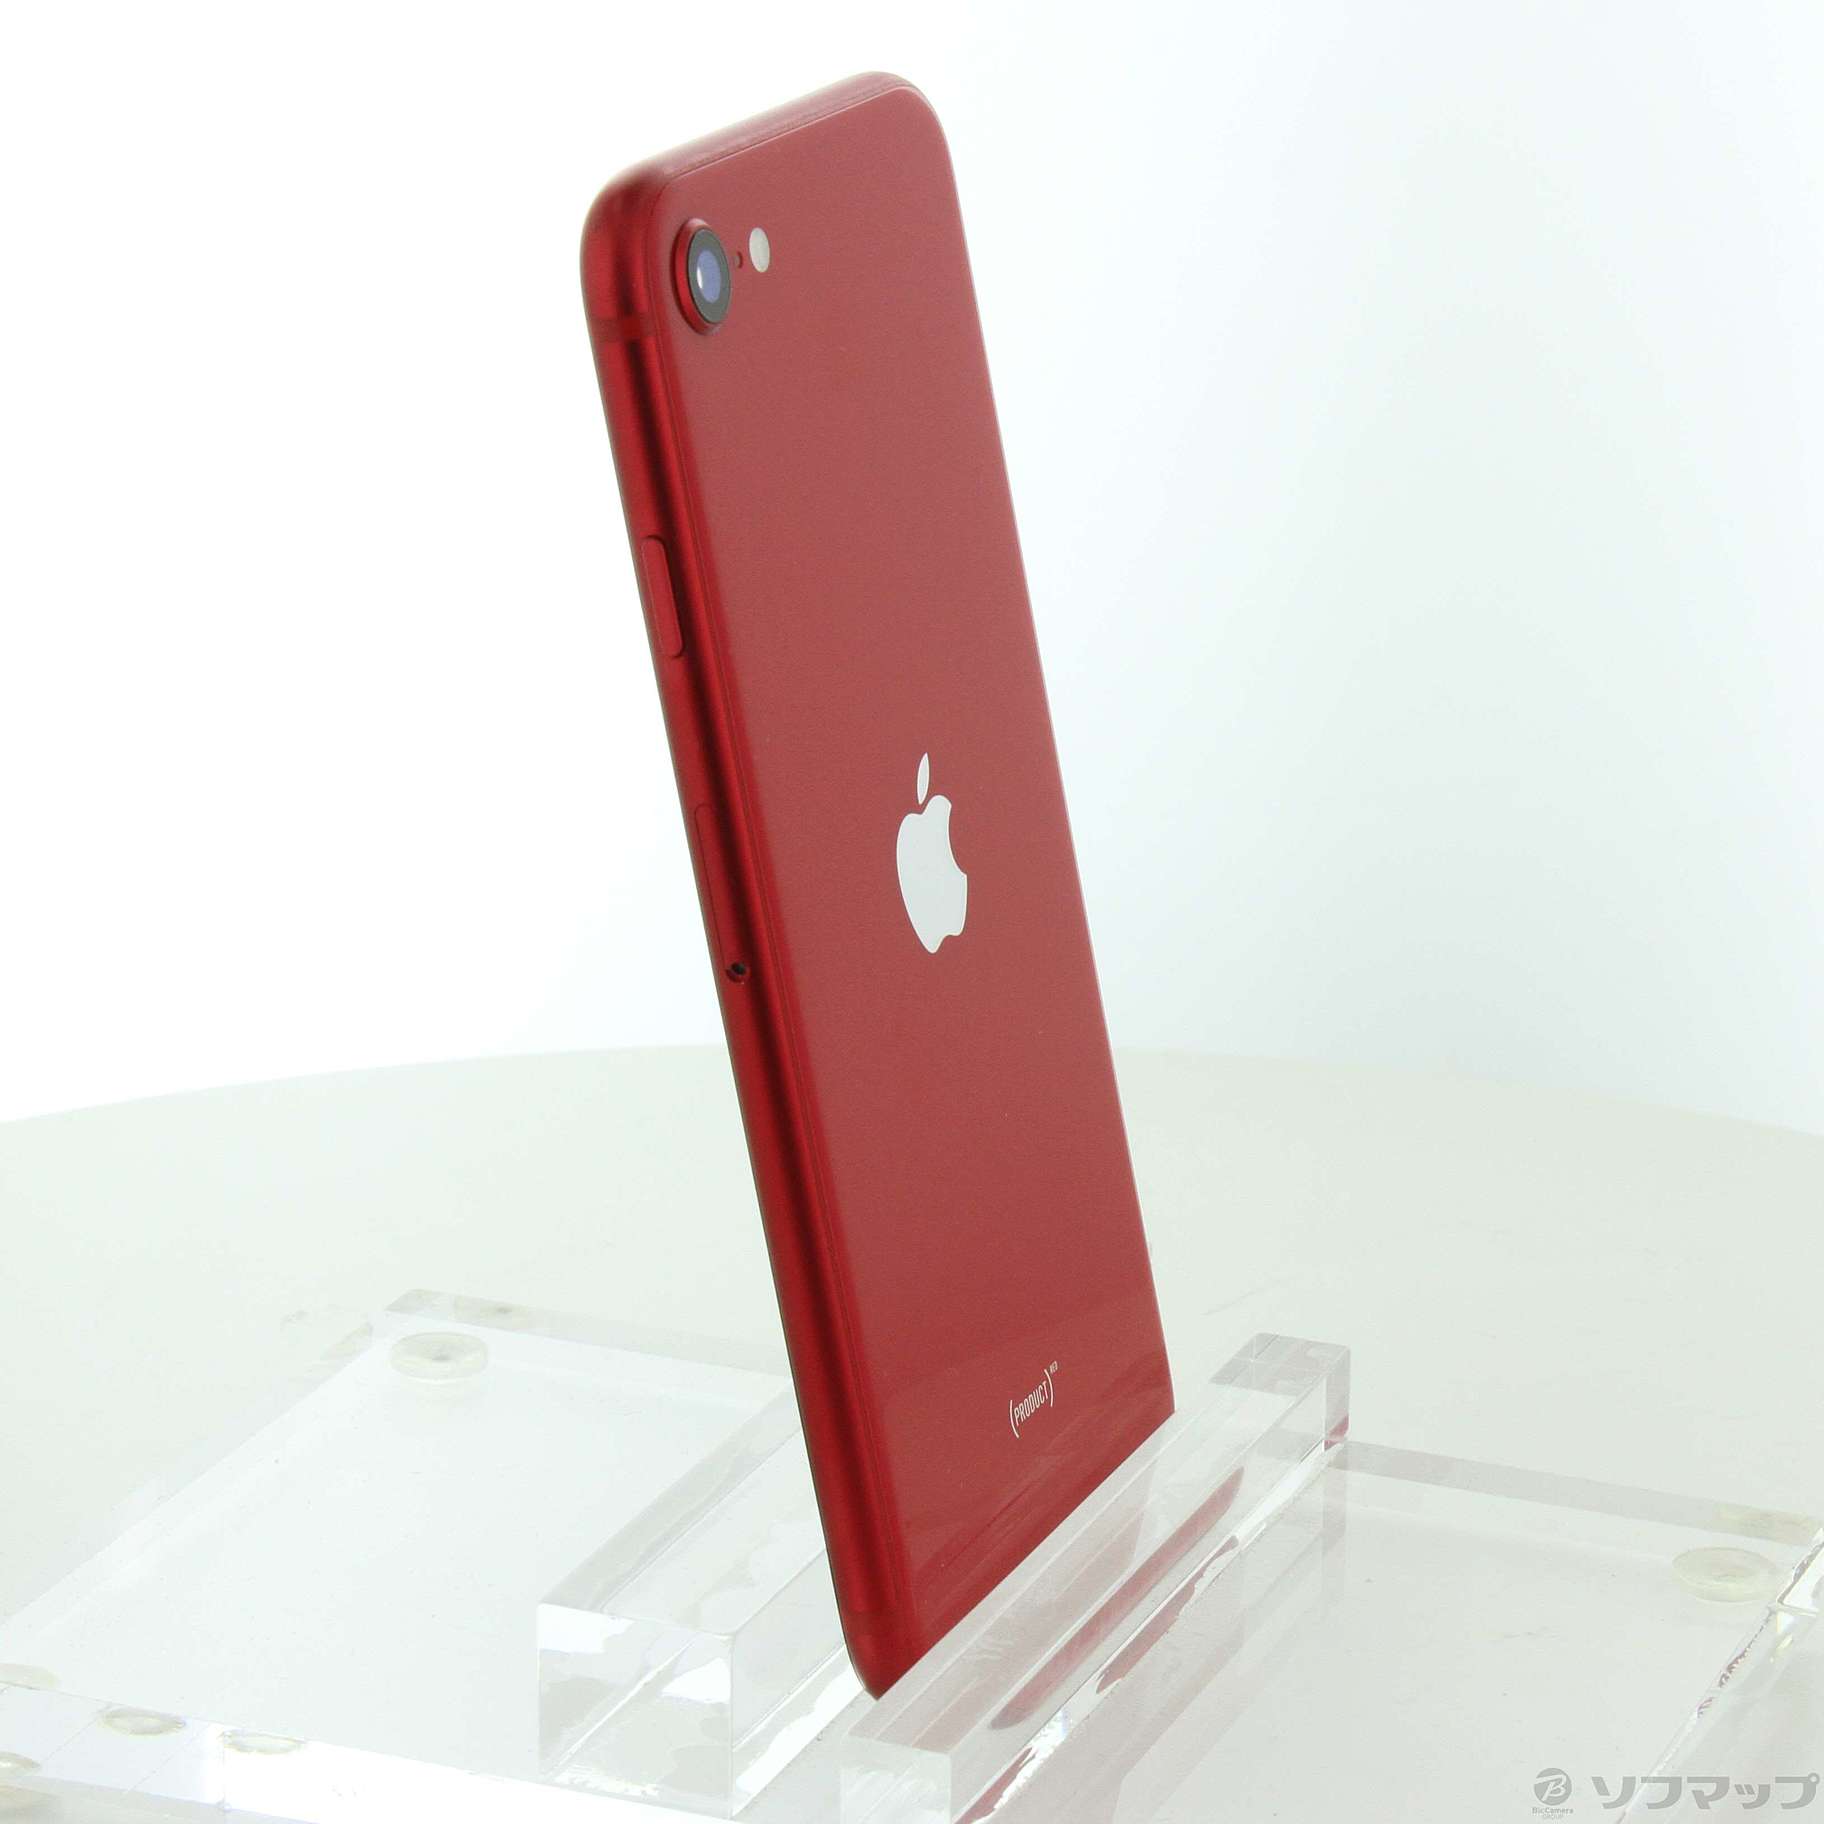 スマホ/家電/カメラiPhone SE 2020 MX9U2J/A Red 新品SIMフリー64GB - スマートフォン本体